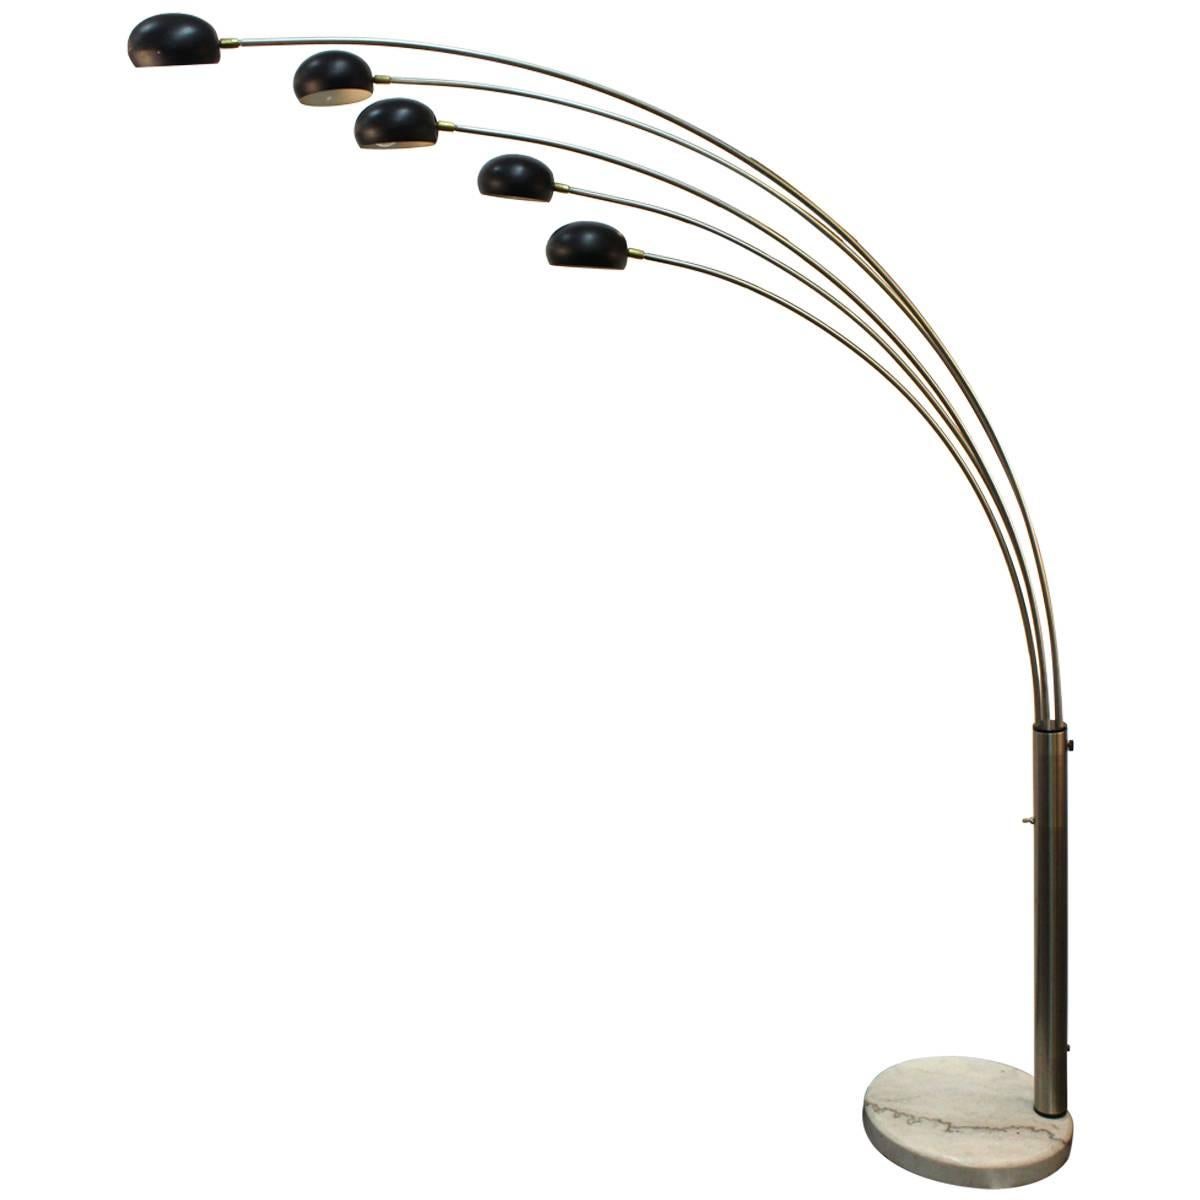 Italian Arc Lamp